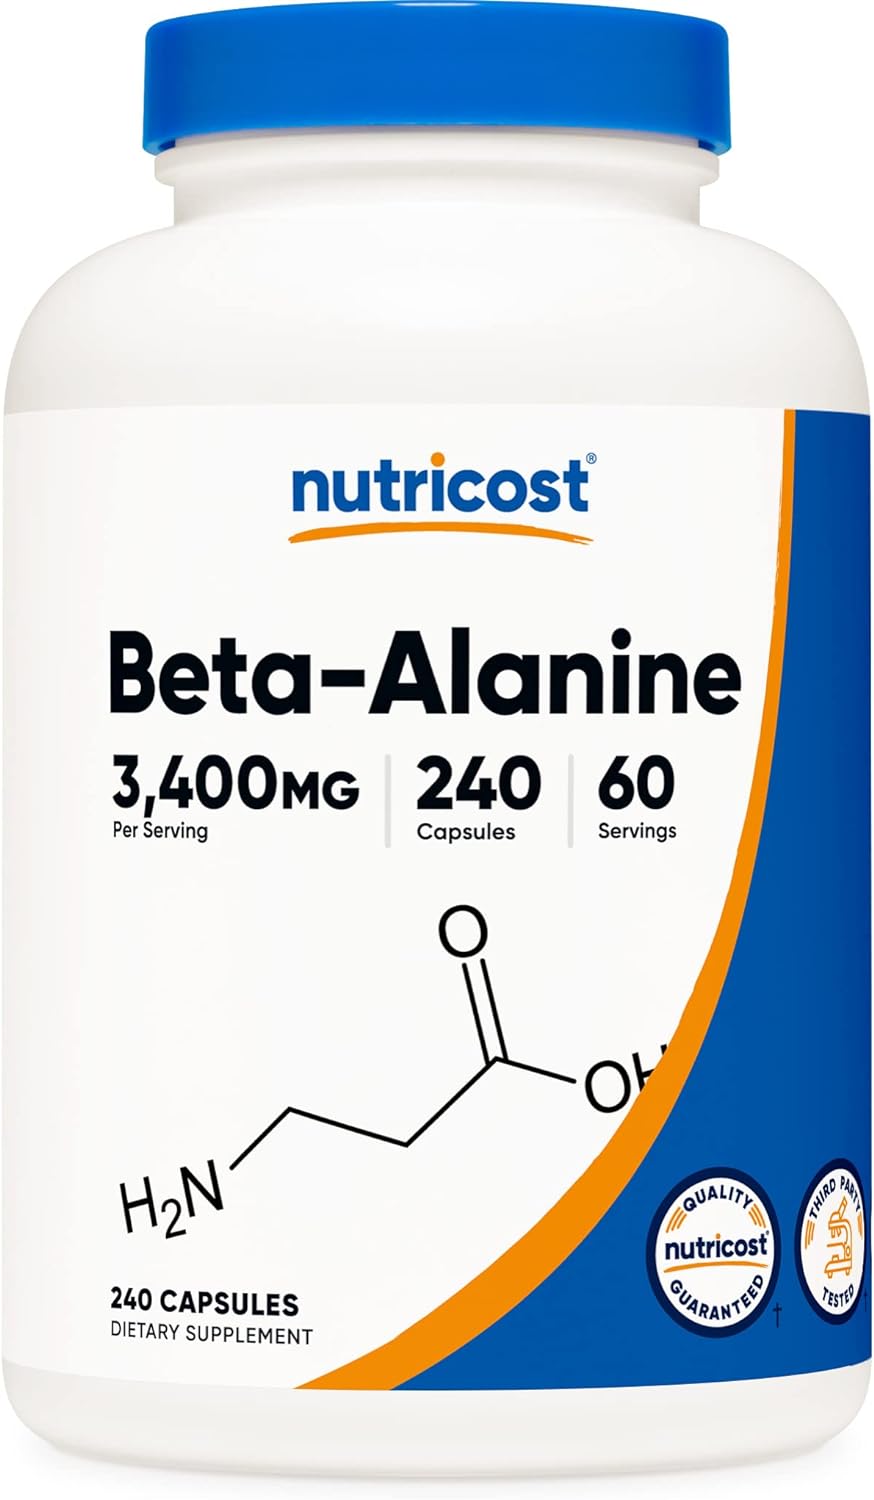 Nutricost Beta-Alanine Capsules 3400mg, 240 Capsules (60 Serv) - Potent Beta Alanine, Gluten Free & Non-GMO, 850mg Per Cap